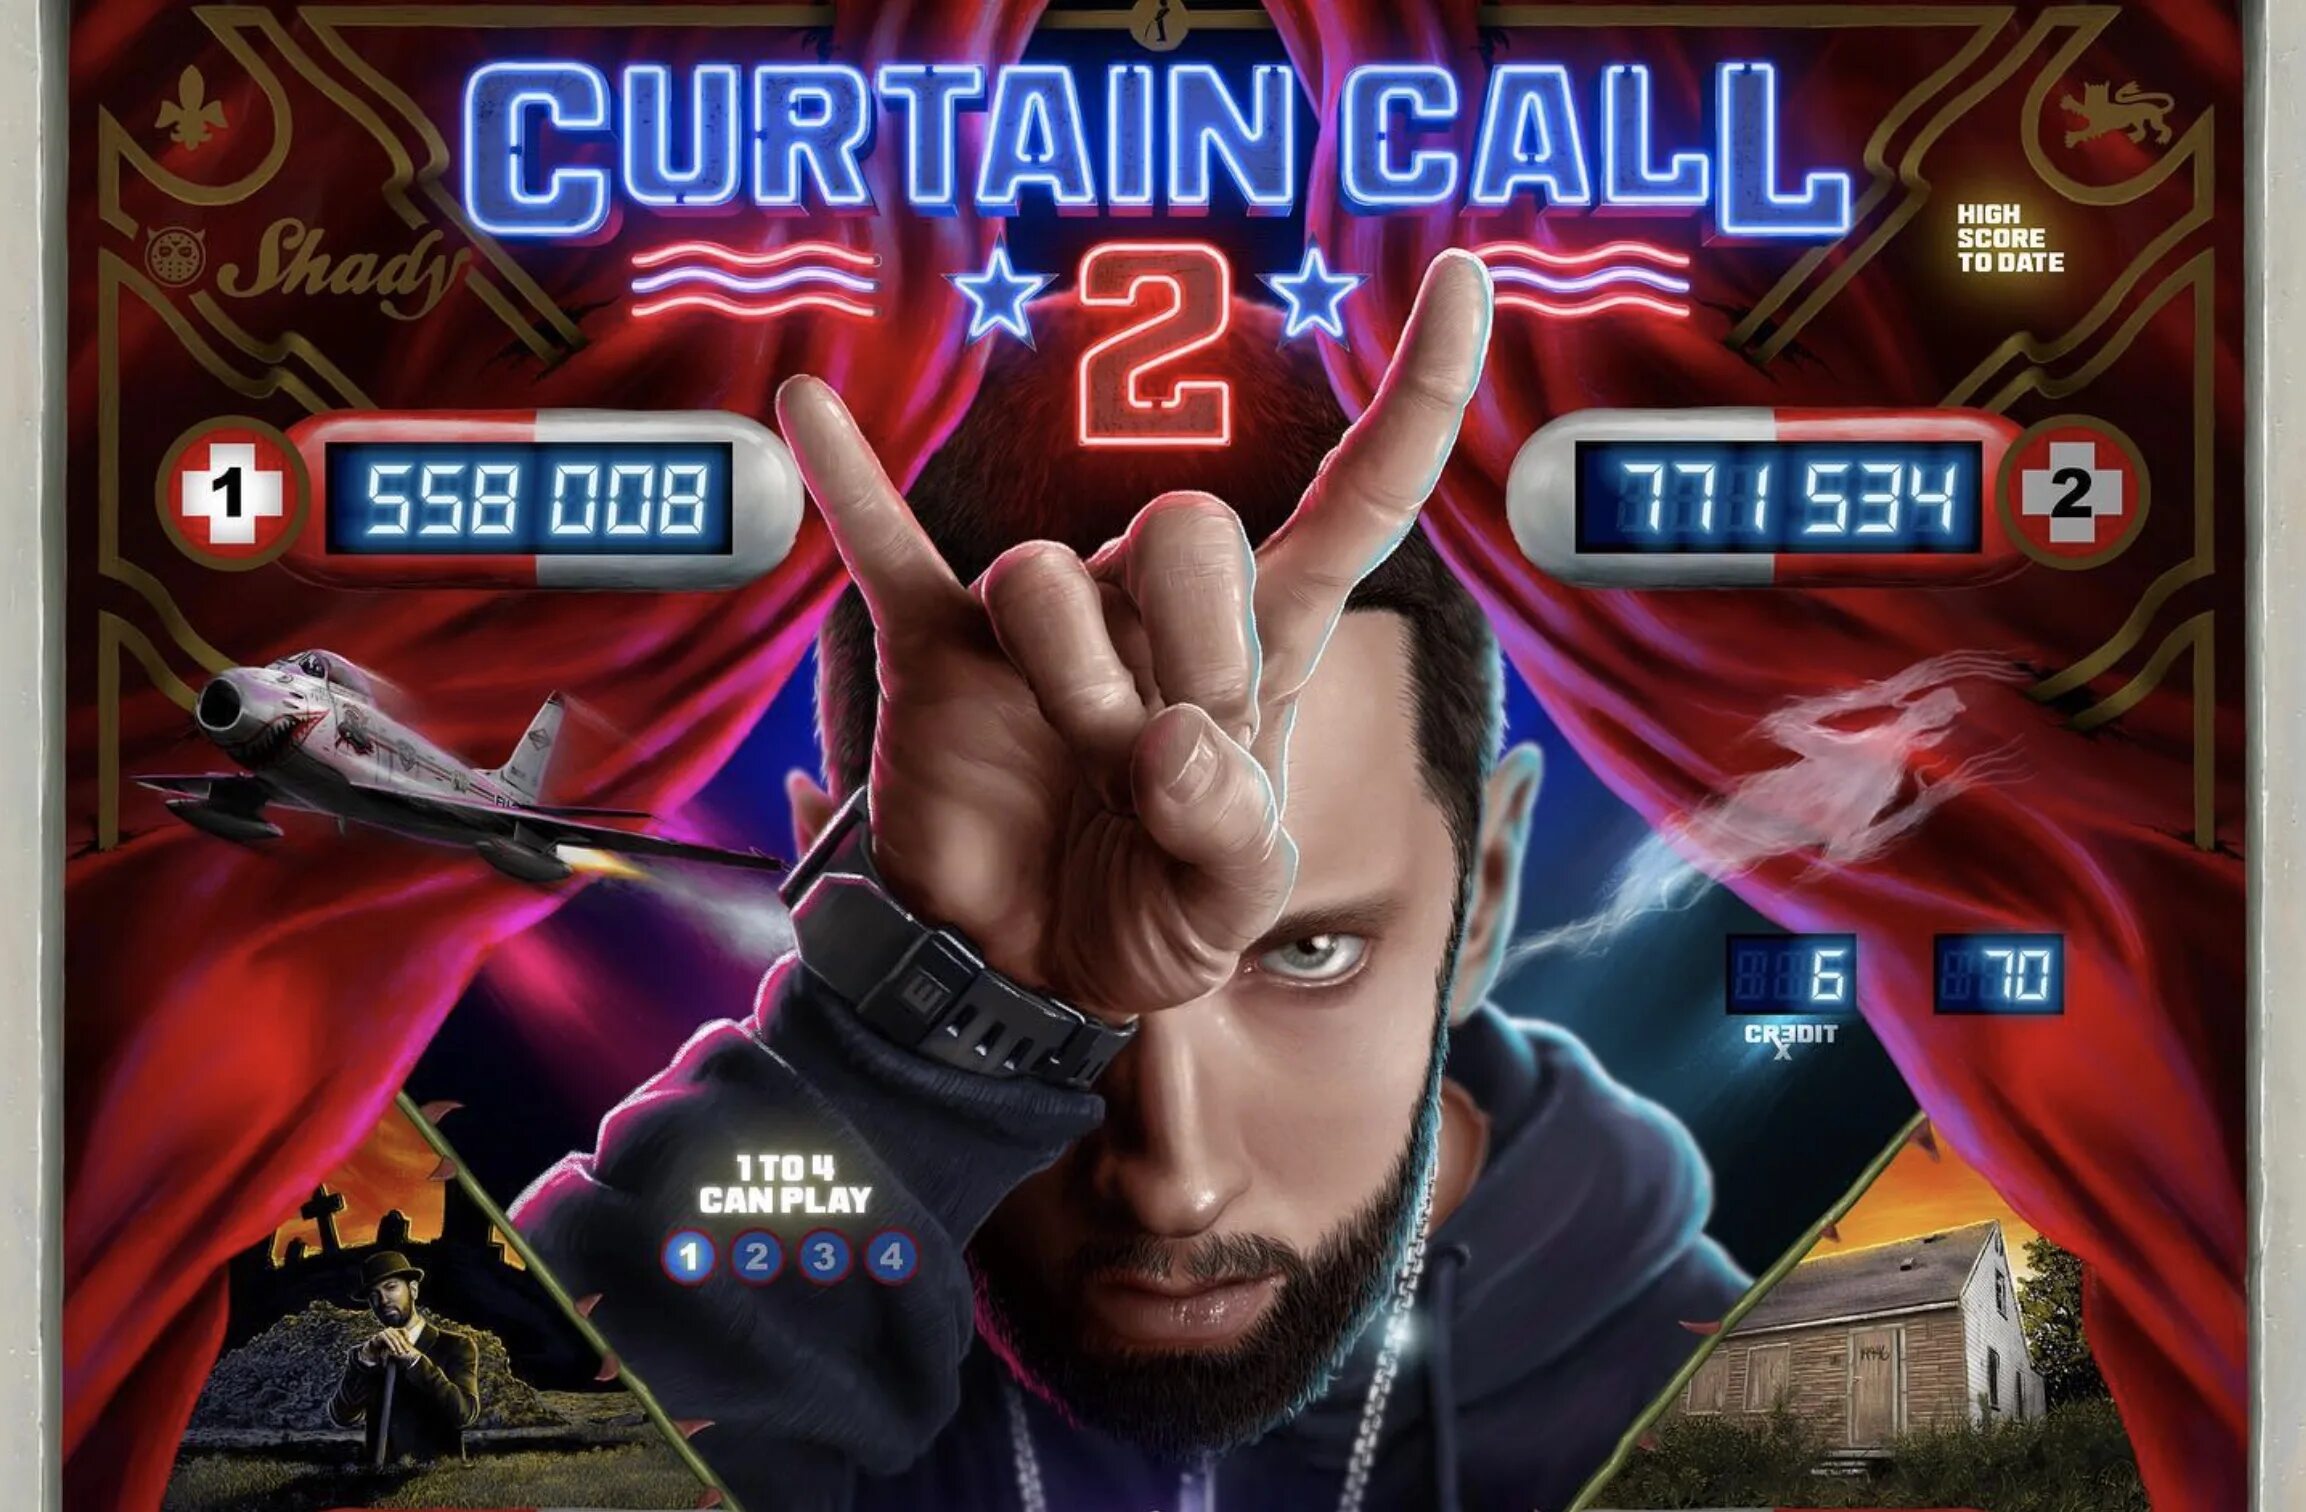 Eminem curtain. Eminem Curtain Call 2. Eminem. Curtain Call. The Hits. 2005. Эминема Curtain Call. Альбомы Эминема Curtain Call.